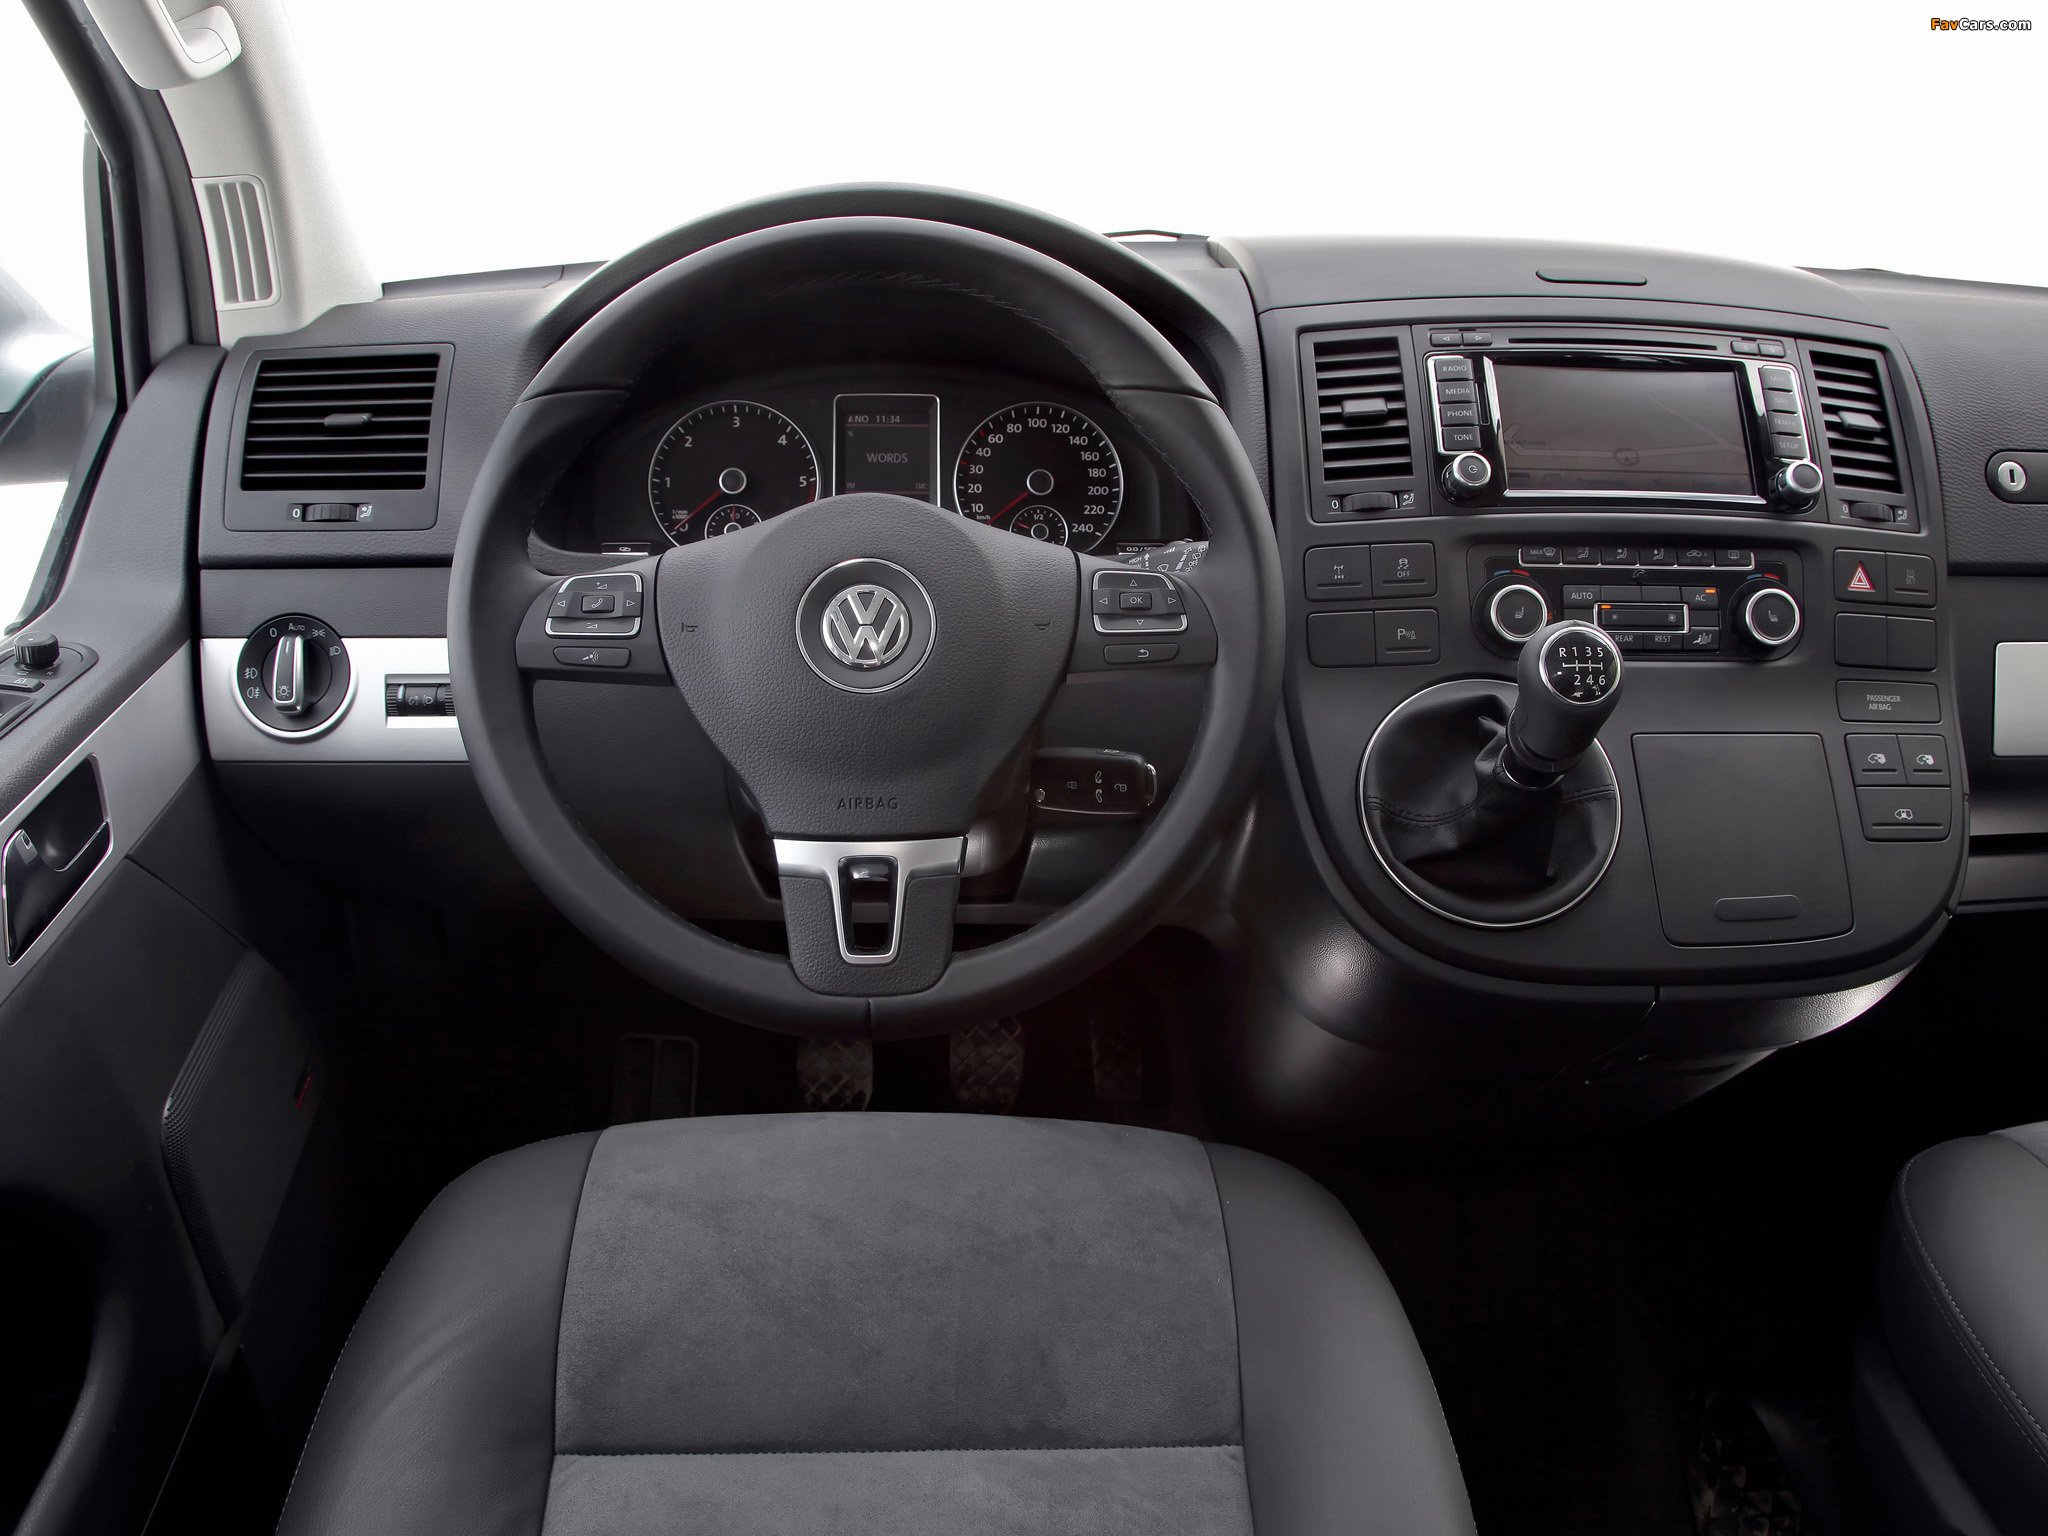 Volkswagen T5 Multivan Comfortline 2009 photos (2048 x 1536)